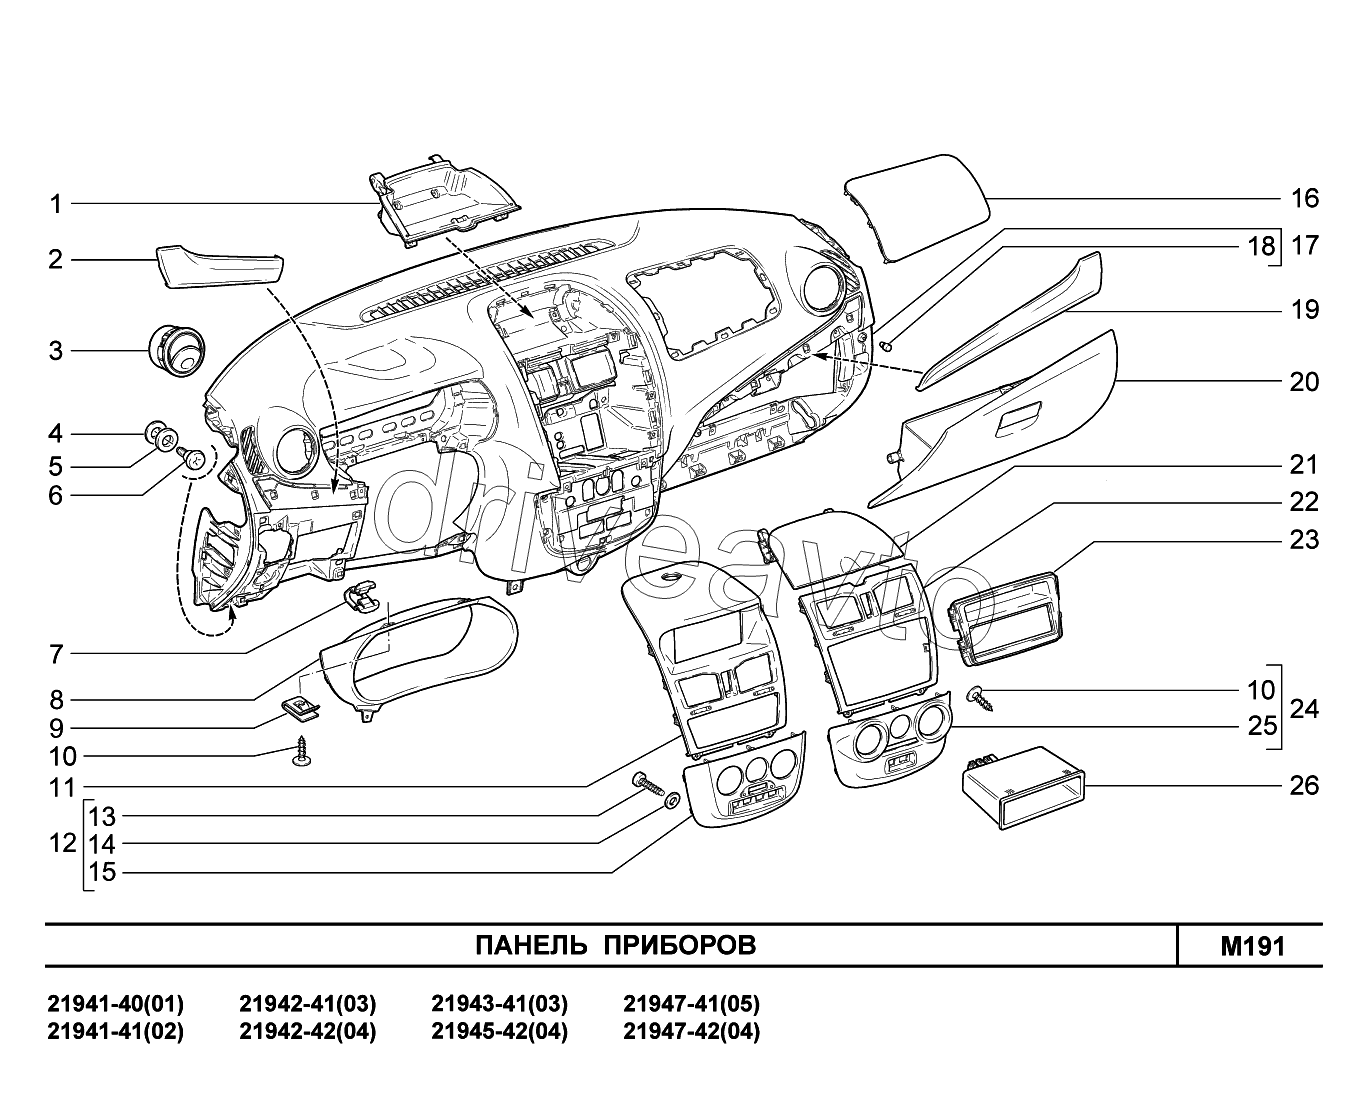 M191. Панель приборов